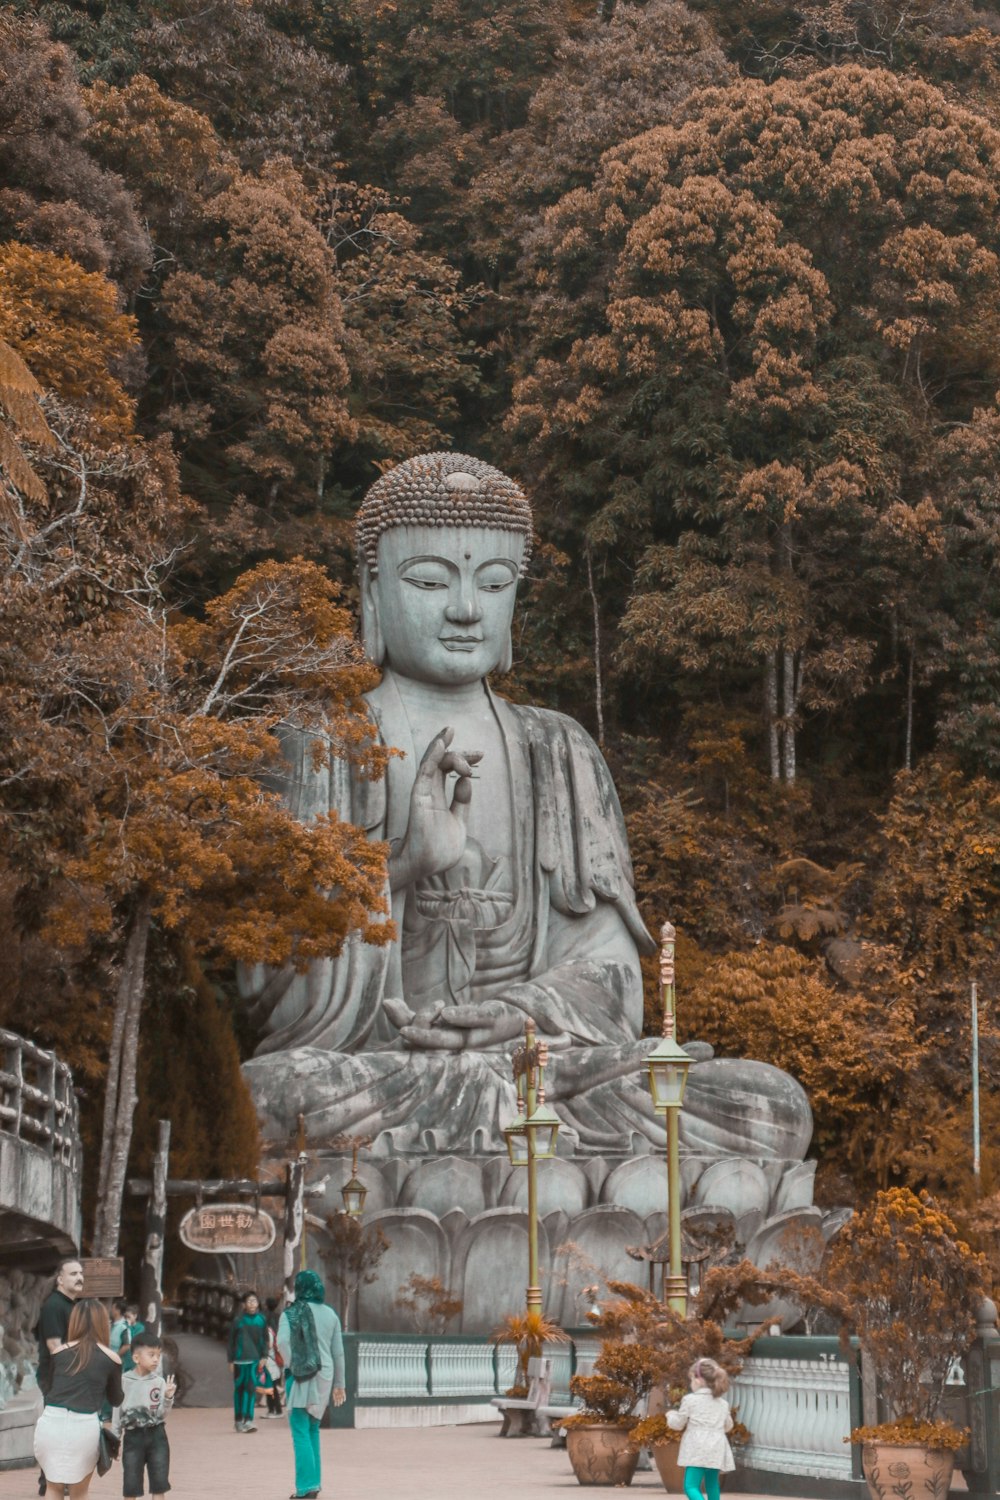 Personas caminando cerca de la estatua de Buda cerca de los árboles durante el día